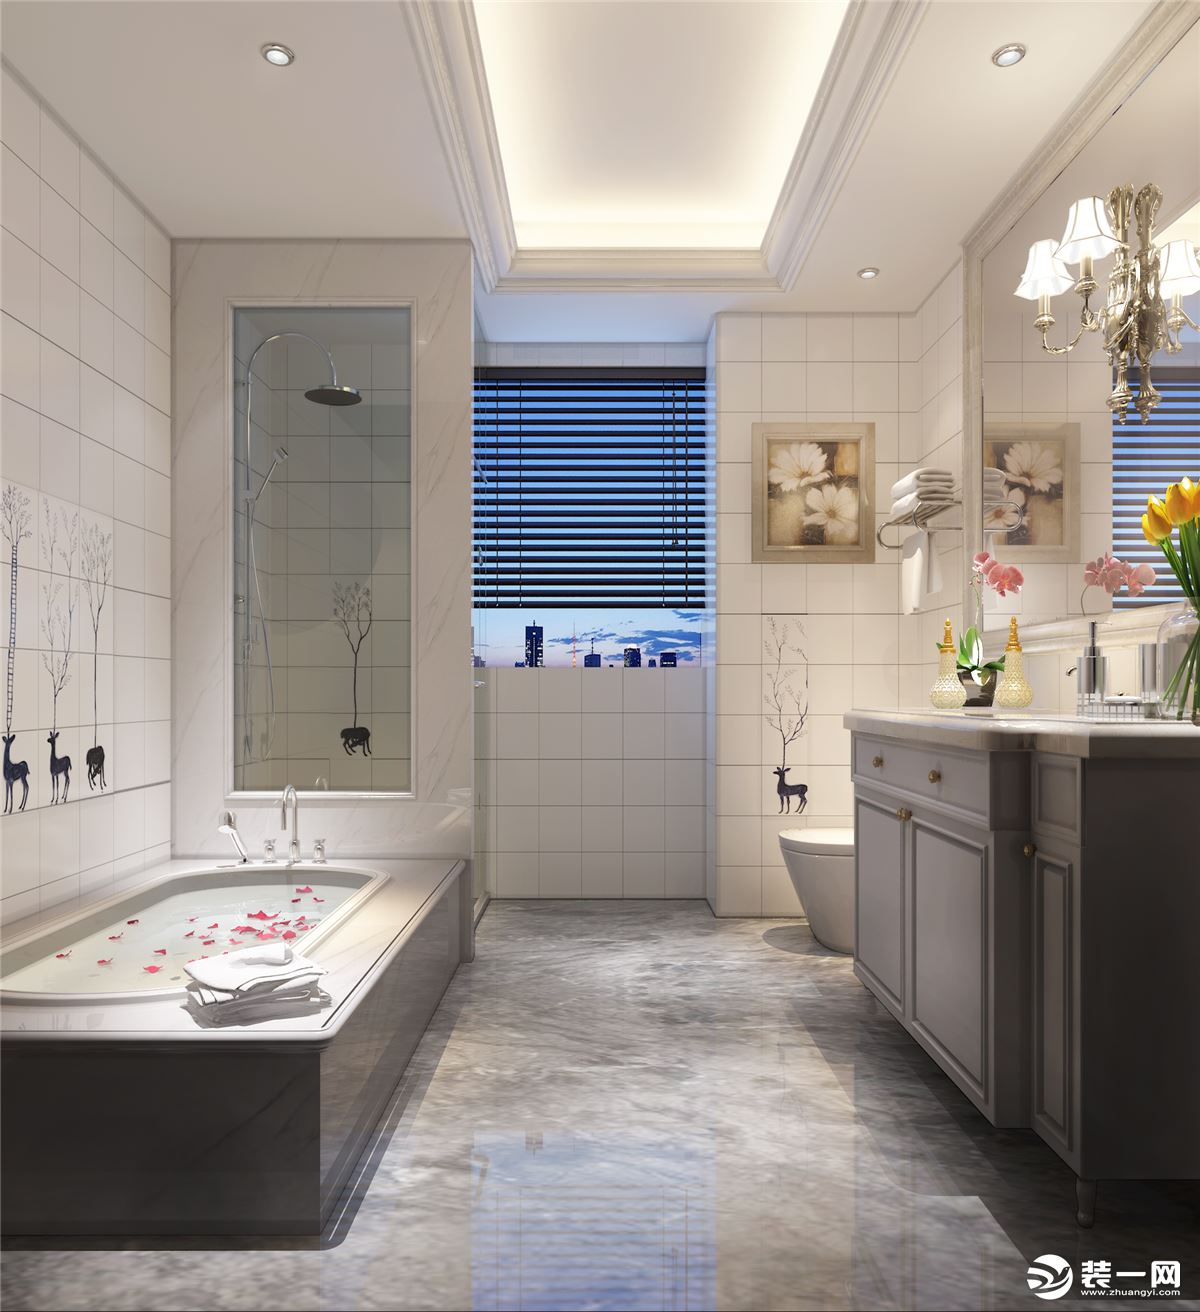 浴室 简洁明亮的卫生间选用了一款带有北美风情的小鹿墙砖让空间有了趣味。